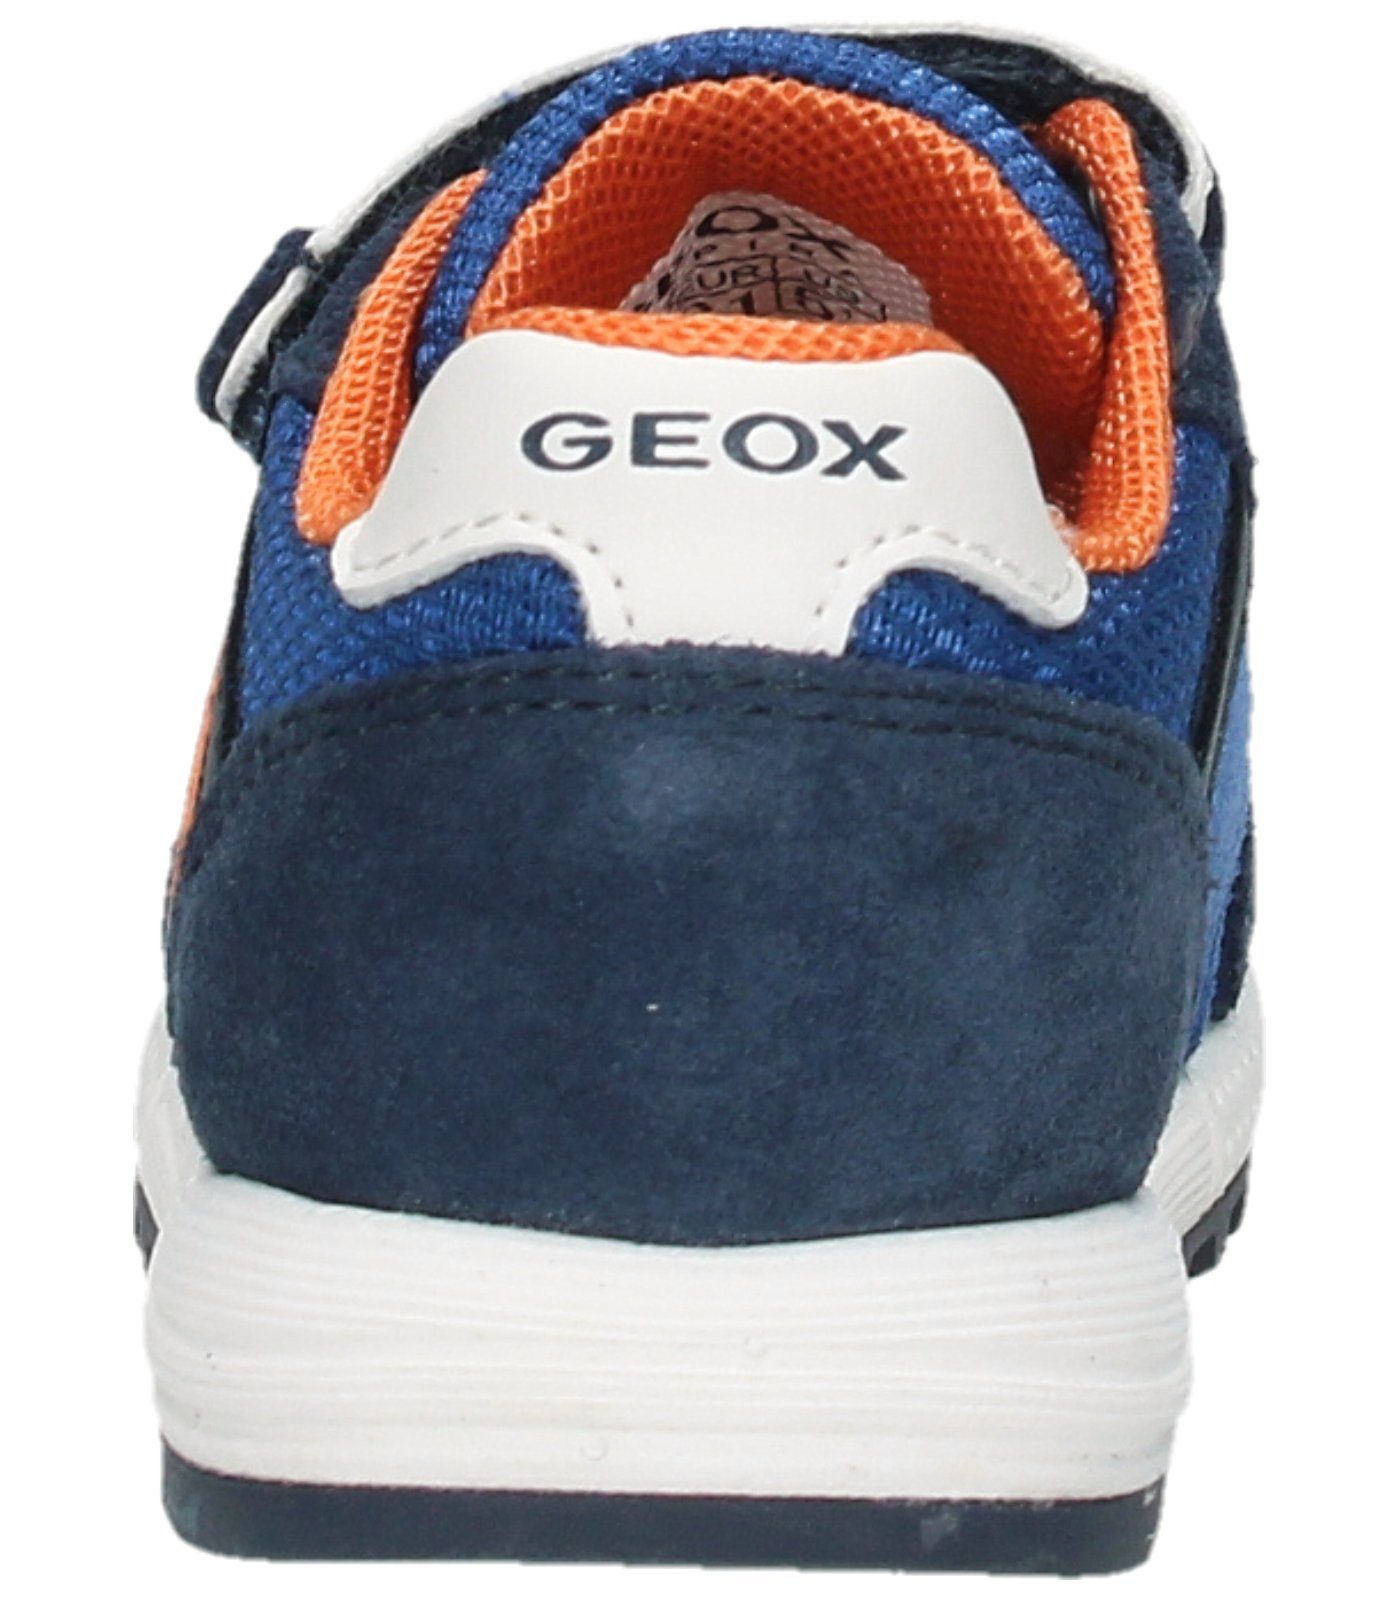 Geox Veloursleder/Mesh Sneaker Sneaker